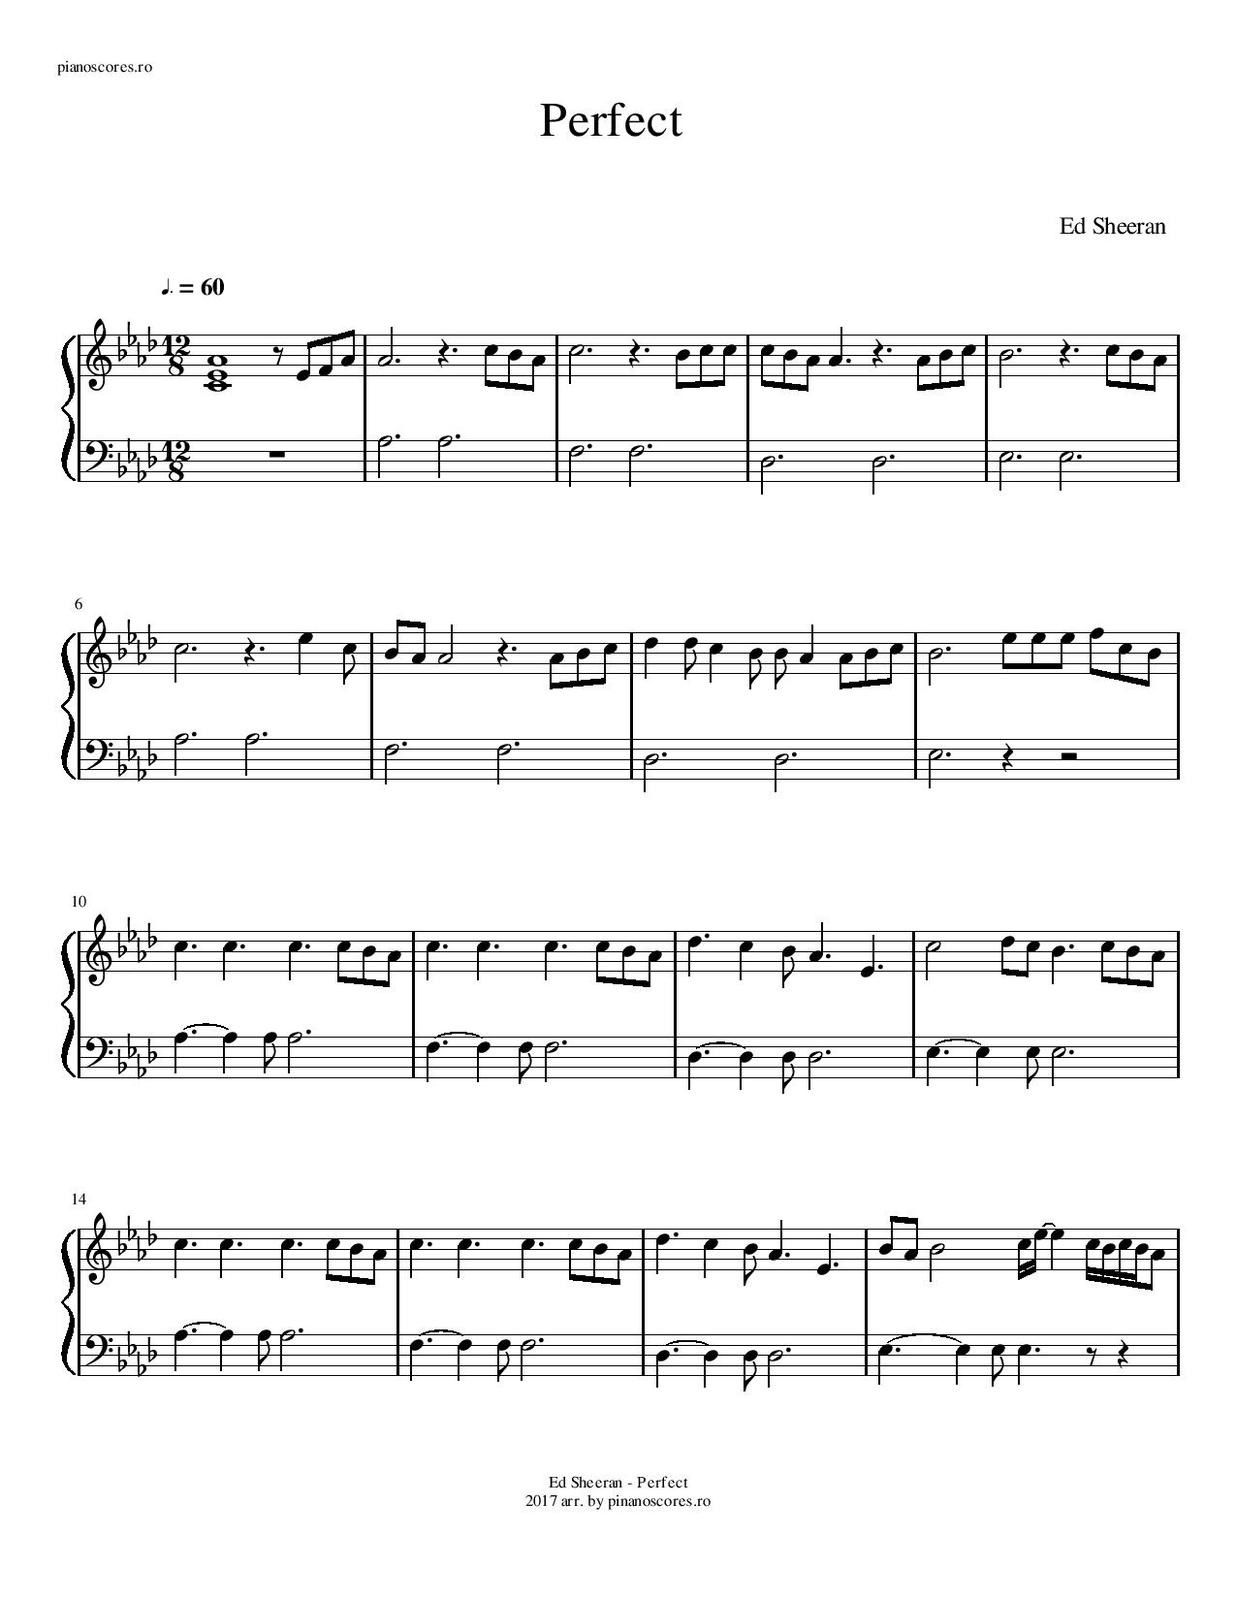 Partitura para Piano "Perfect" | Ed Sheeran - Las Notas De Nana